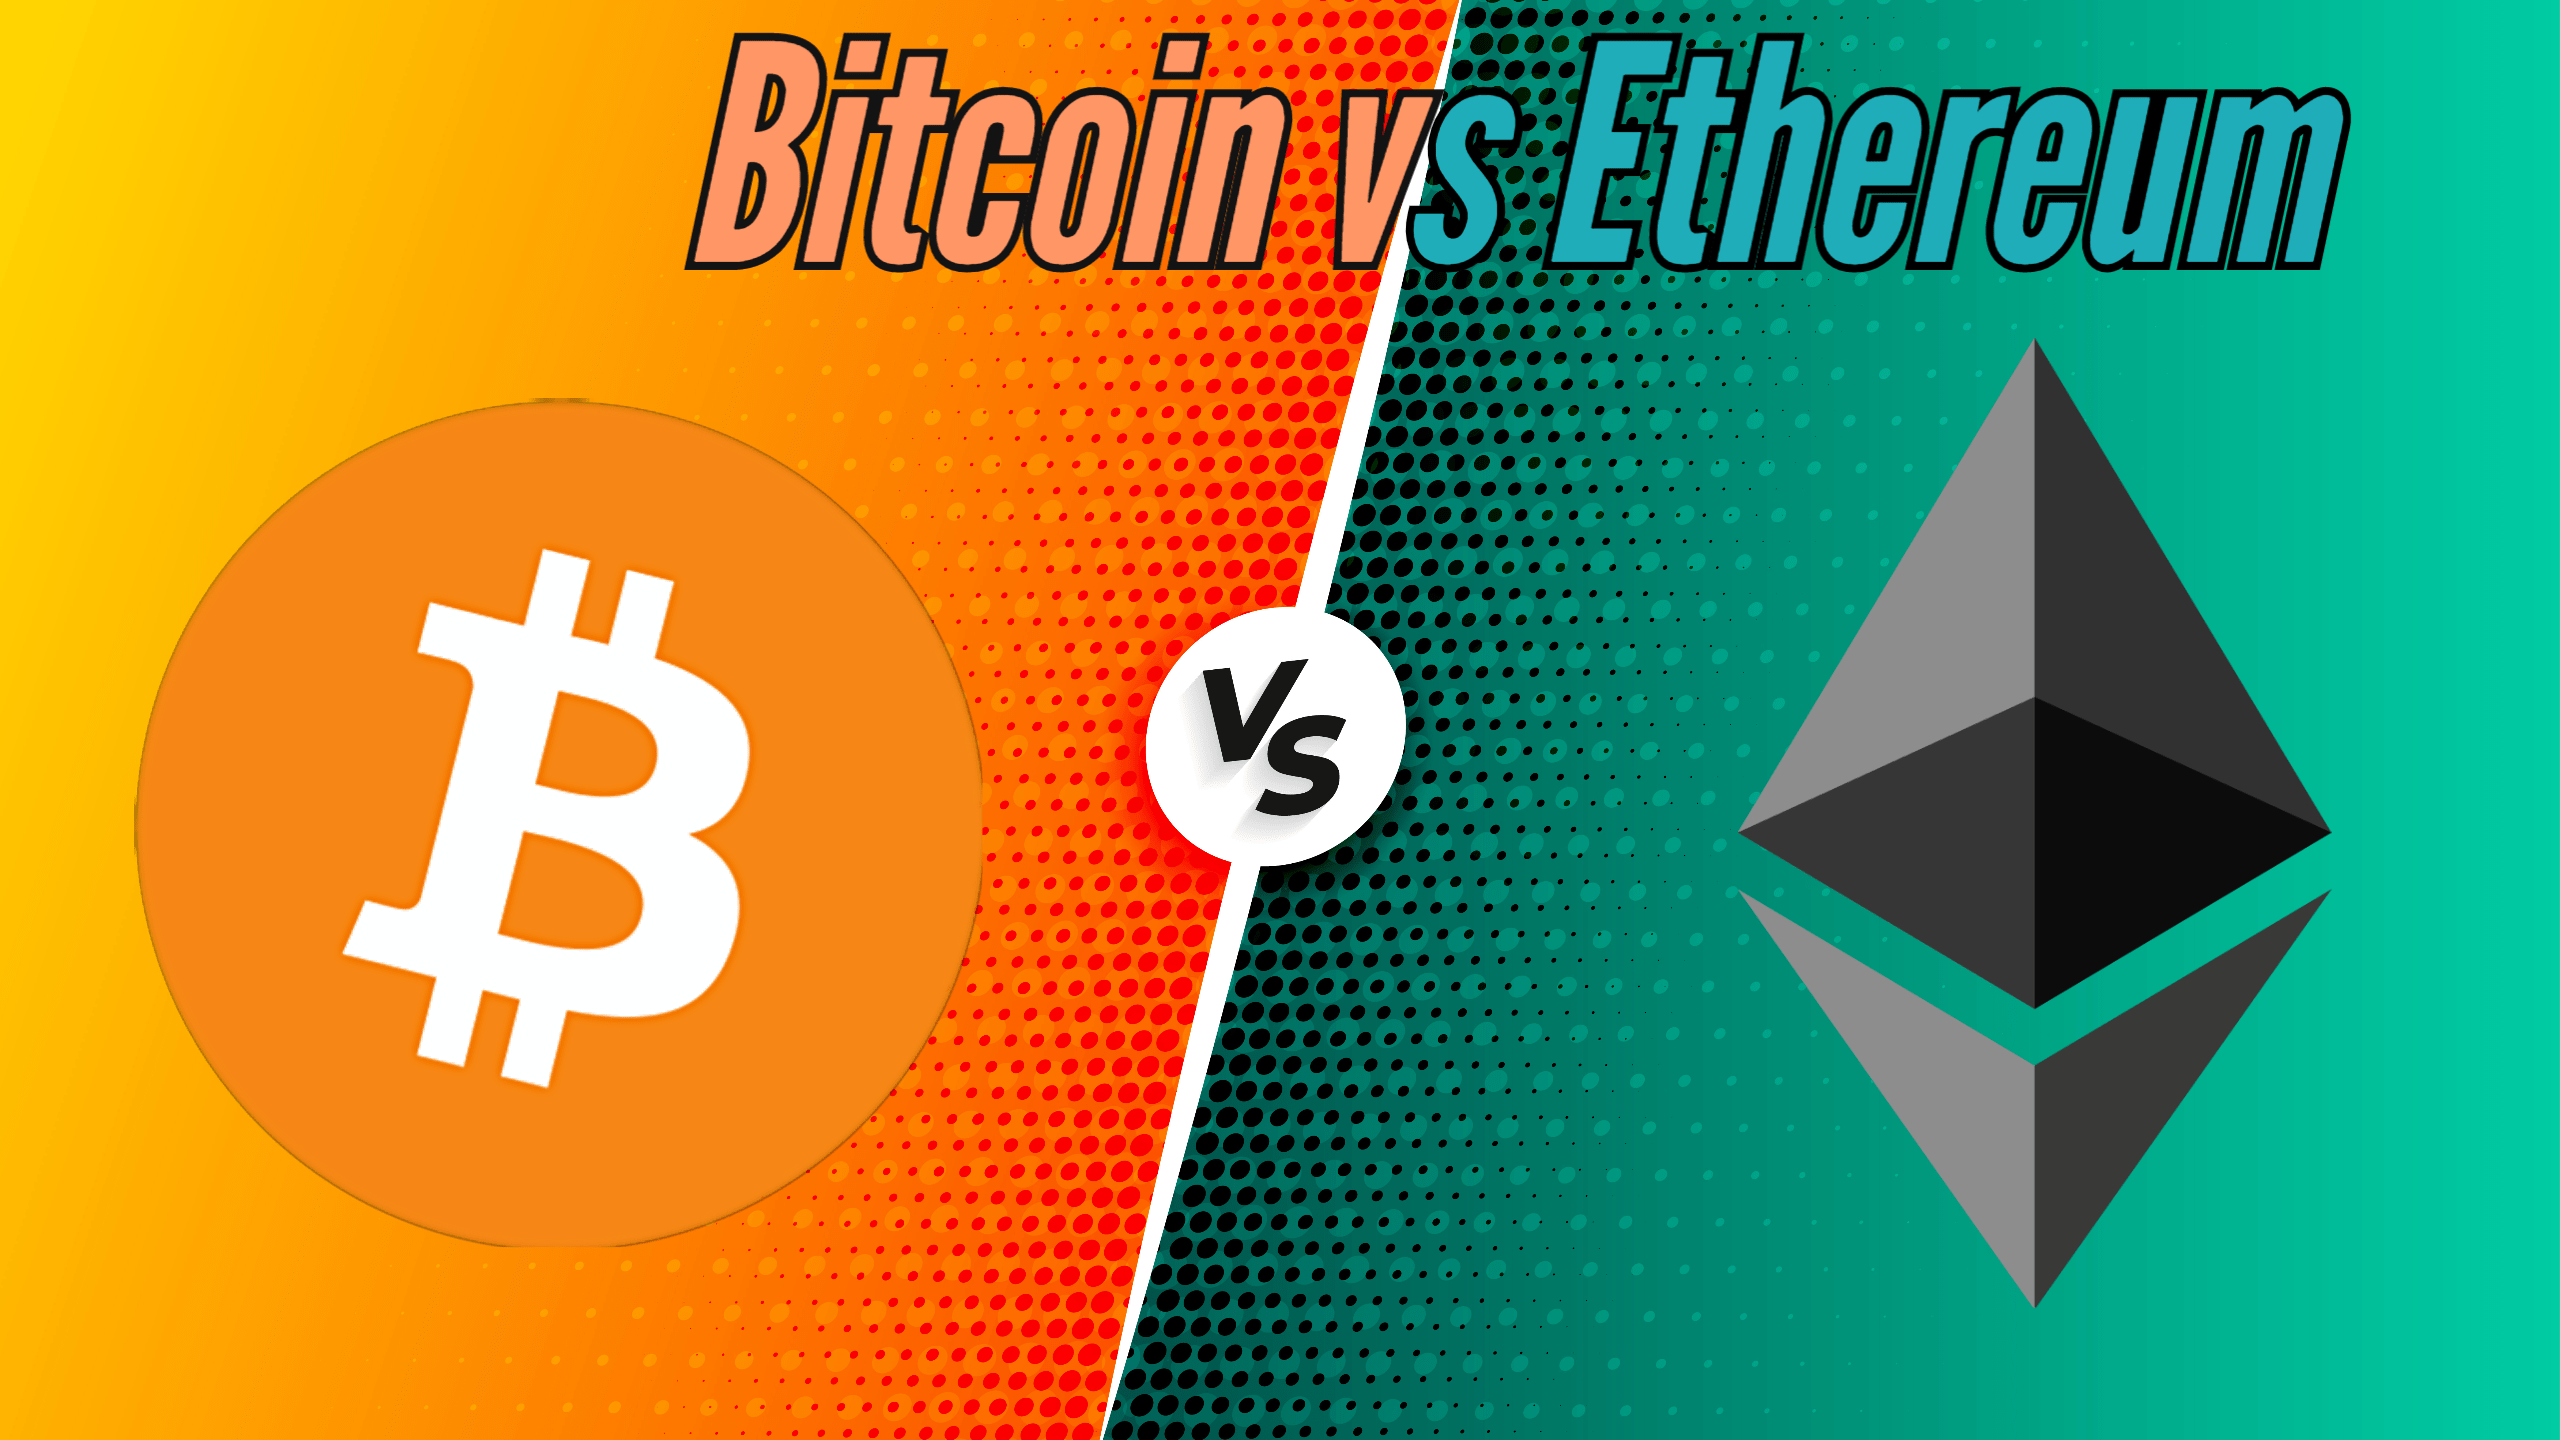 ar trebui să schimb eth pentru bitcoin?